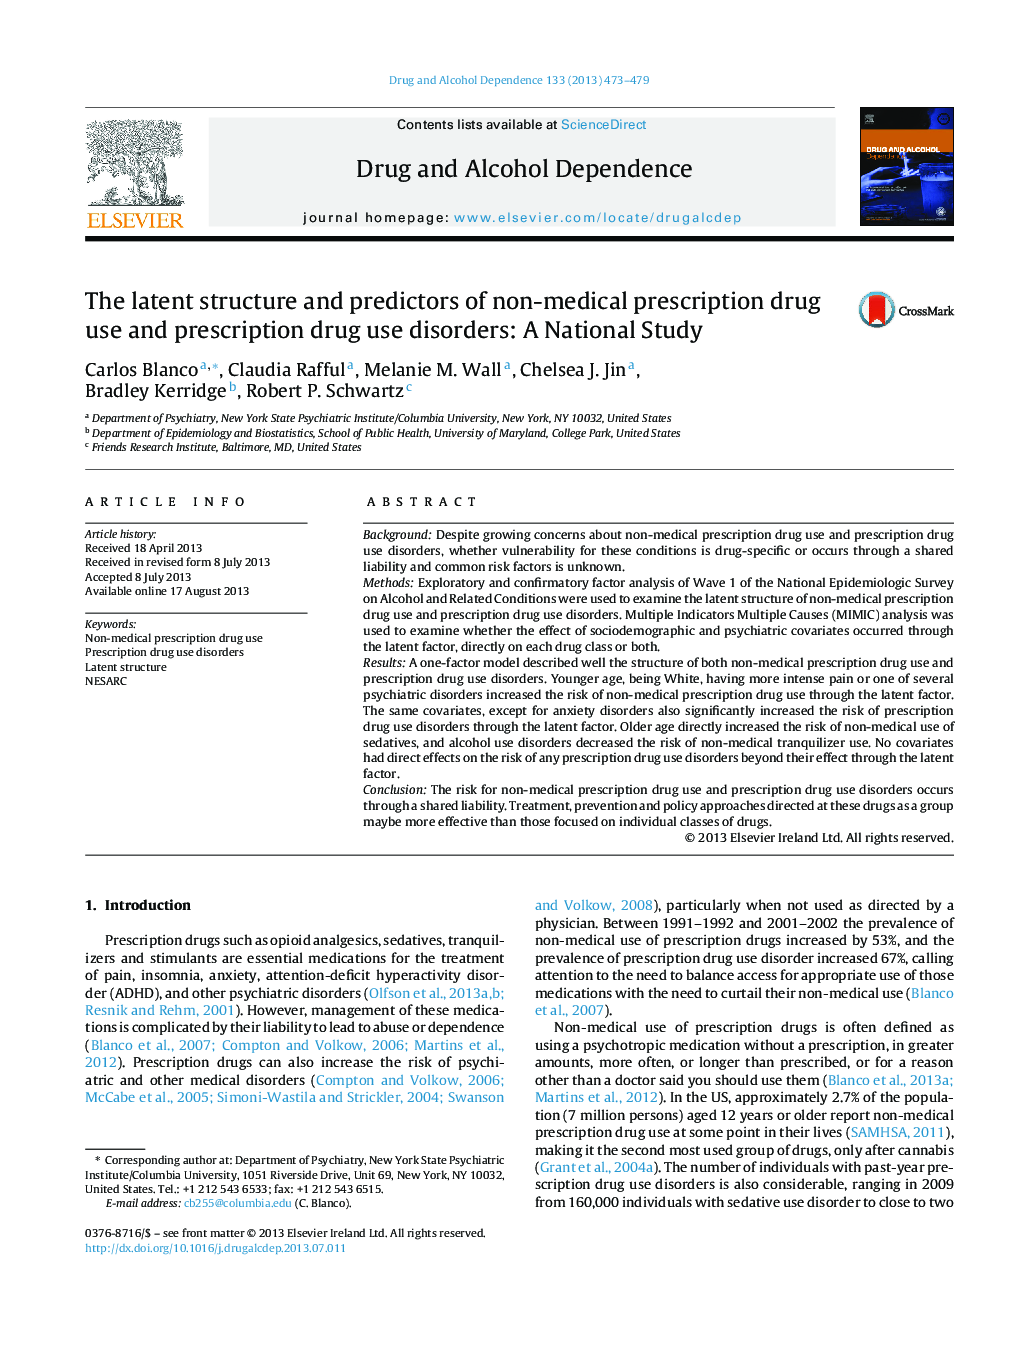 ساختار پنهان و پیش بینی کننده های مصرف داروهای تجویزی غیر مجاز و اختلالات مصرف داروهای تجویزی: یک مطالعه ملی 